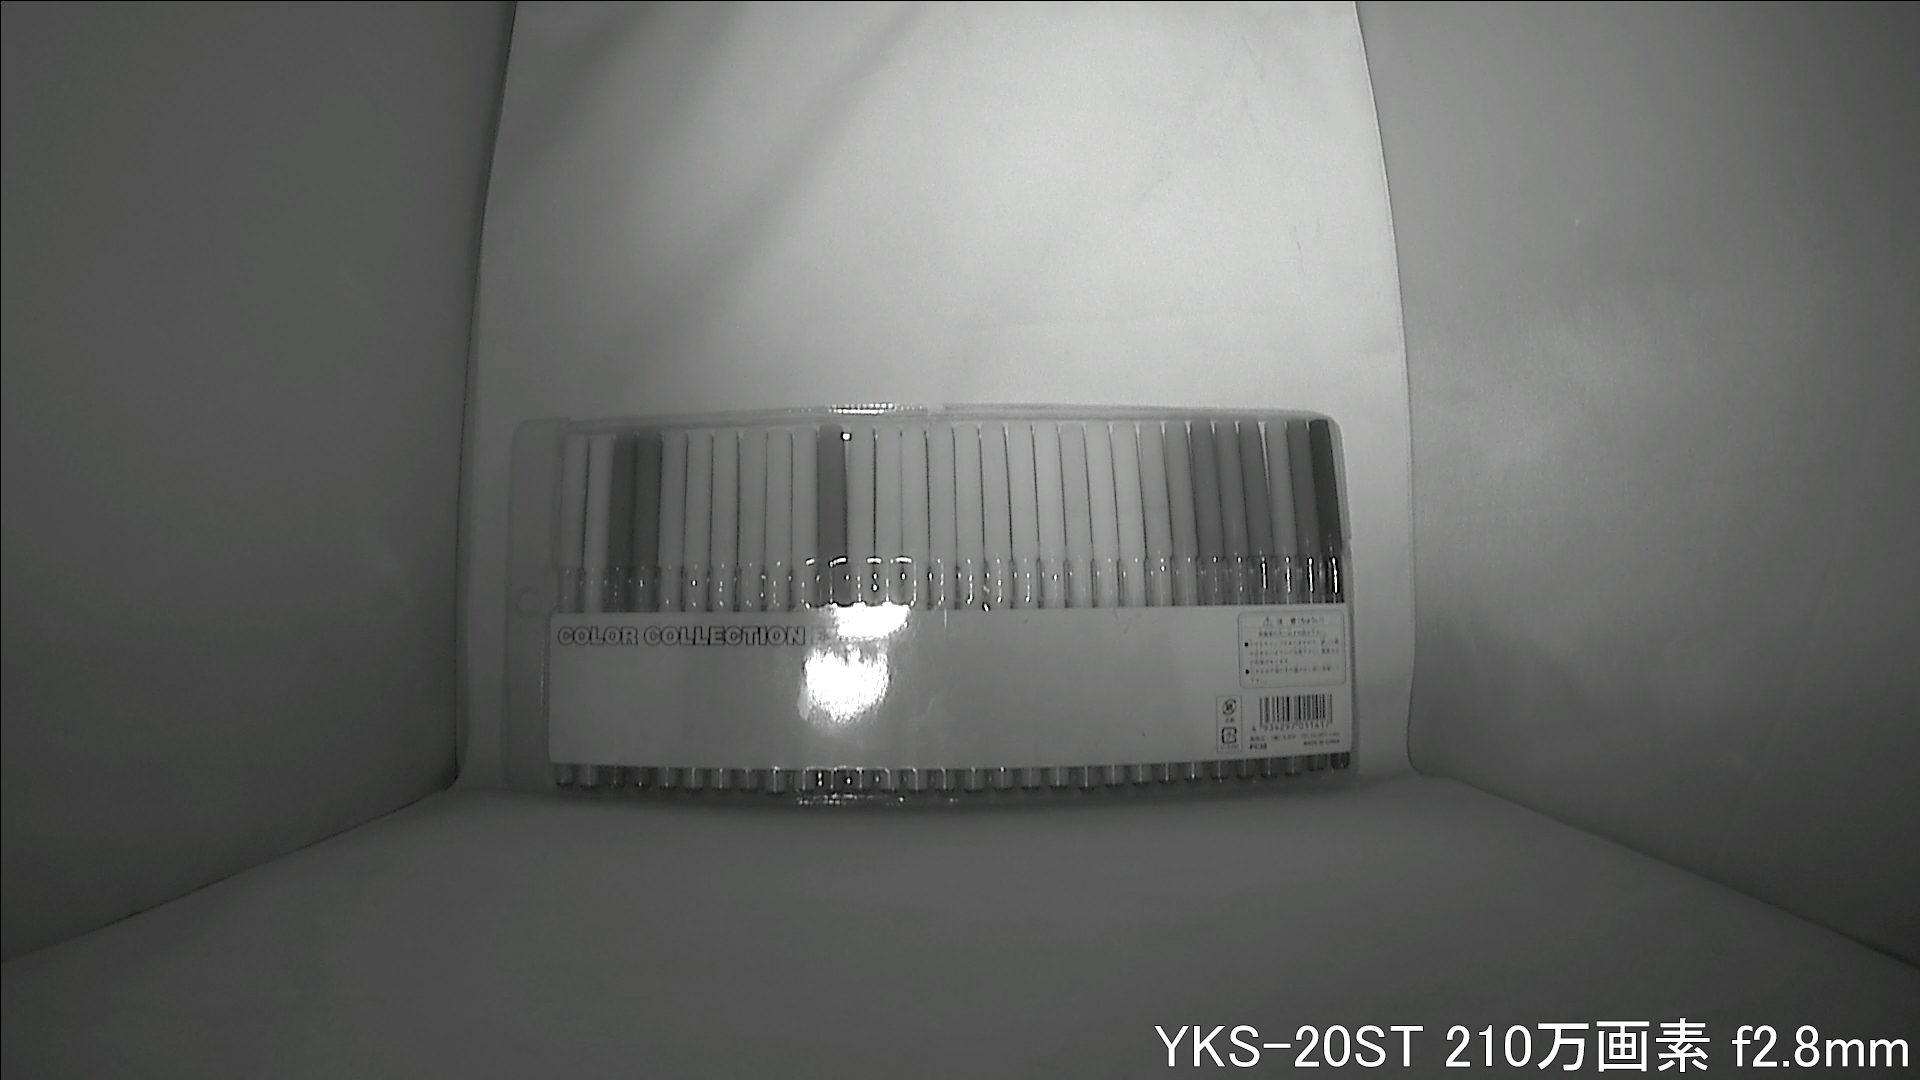 YKS-20ST カメラから約40cm離れた被写体を暗視撮影